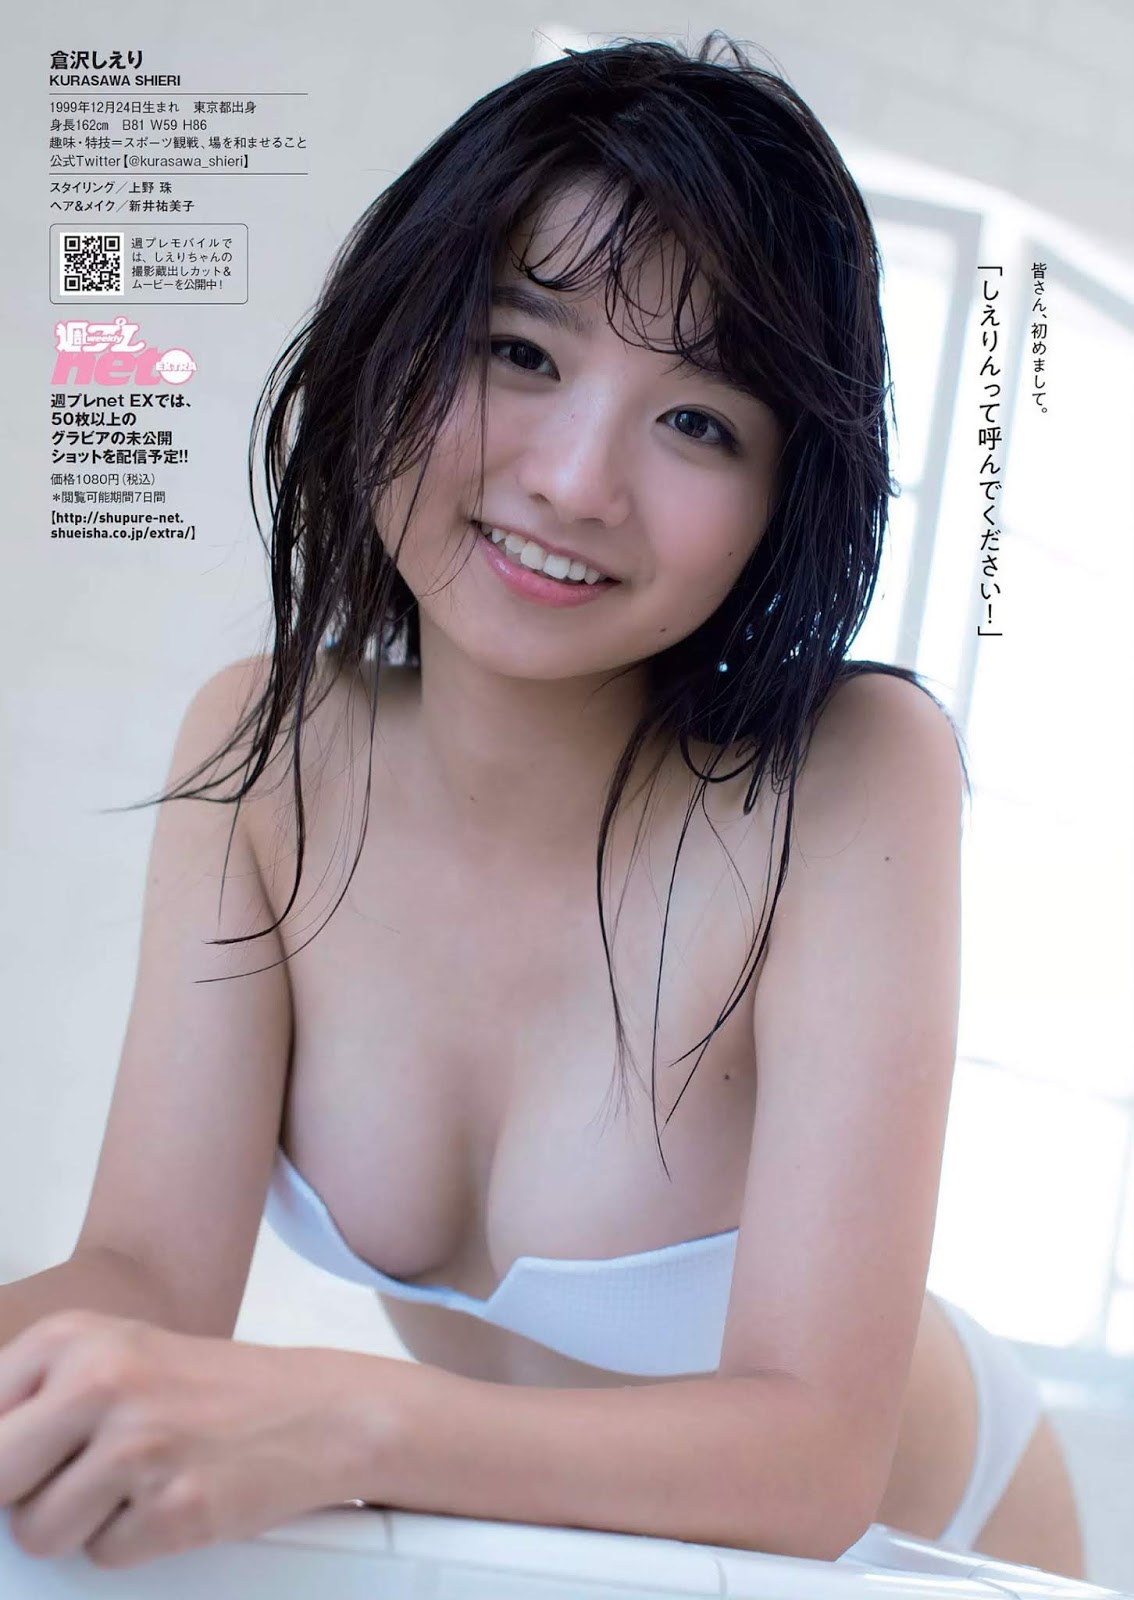 Shieri Kurasawa 倉沢しえり, Weekly Playboy 2018 No.50 (週刊プレイボーイ 2018年50号)